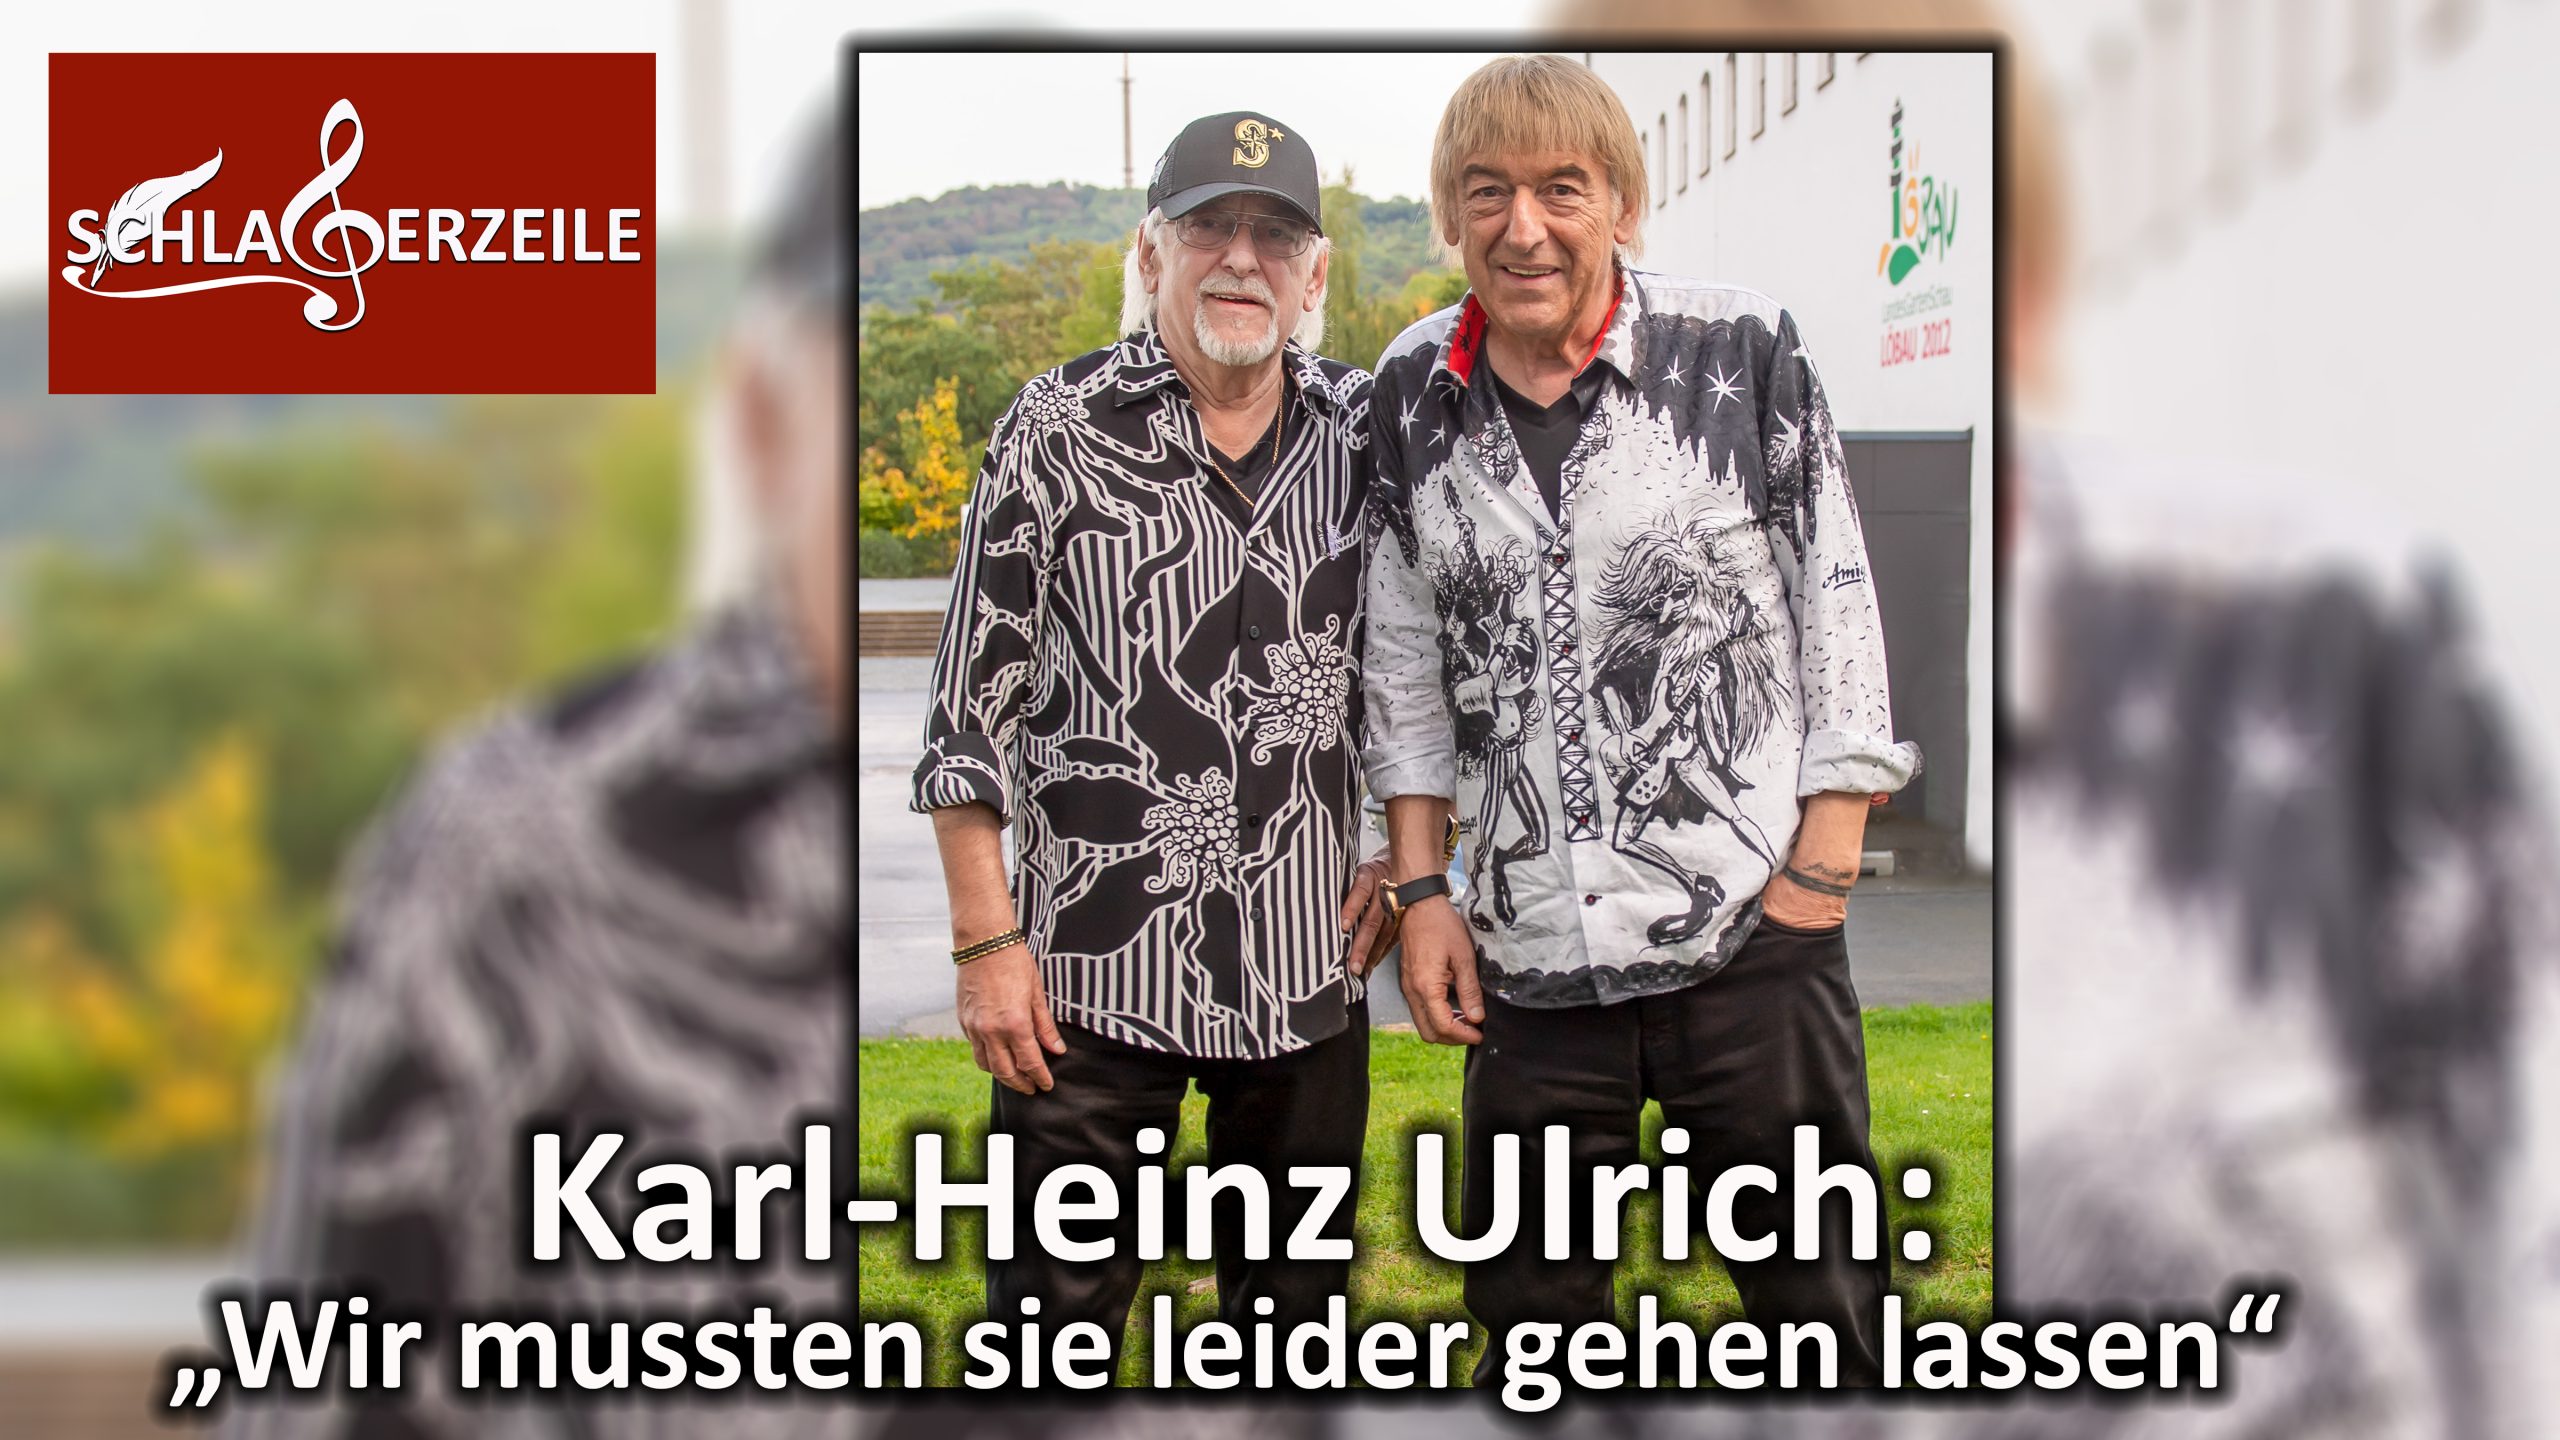 Die Amigos, Karl-Heinz Ulrich, Ehefrau gestorben